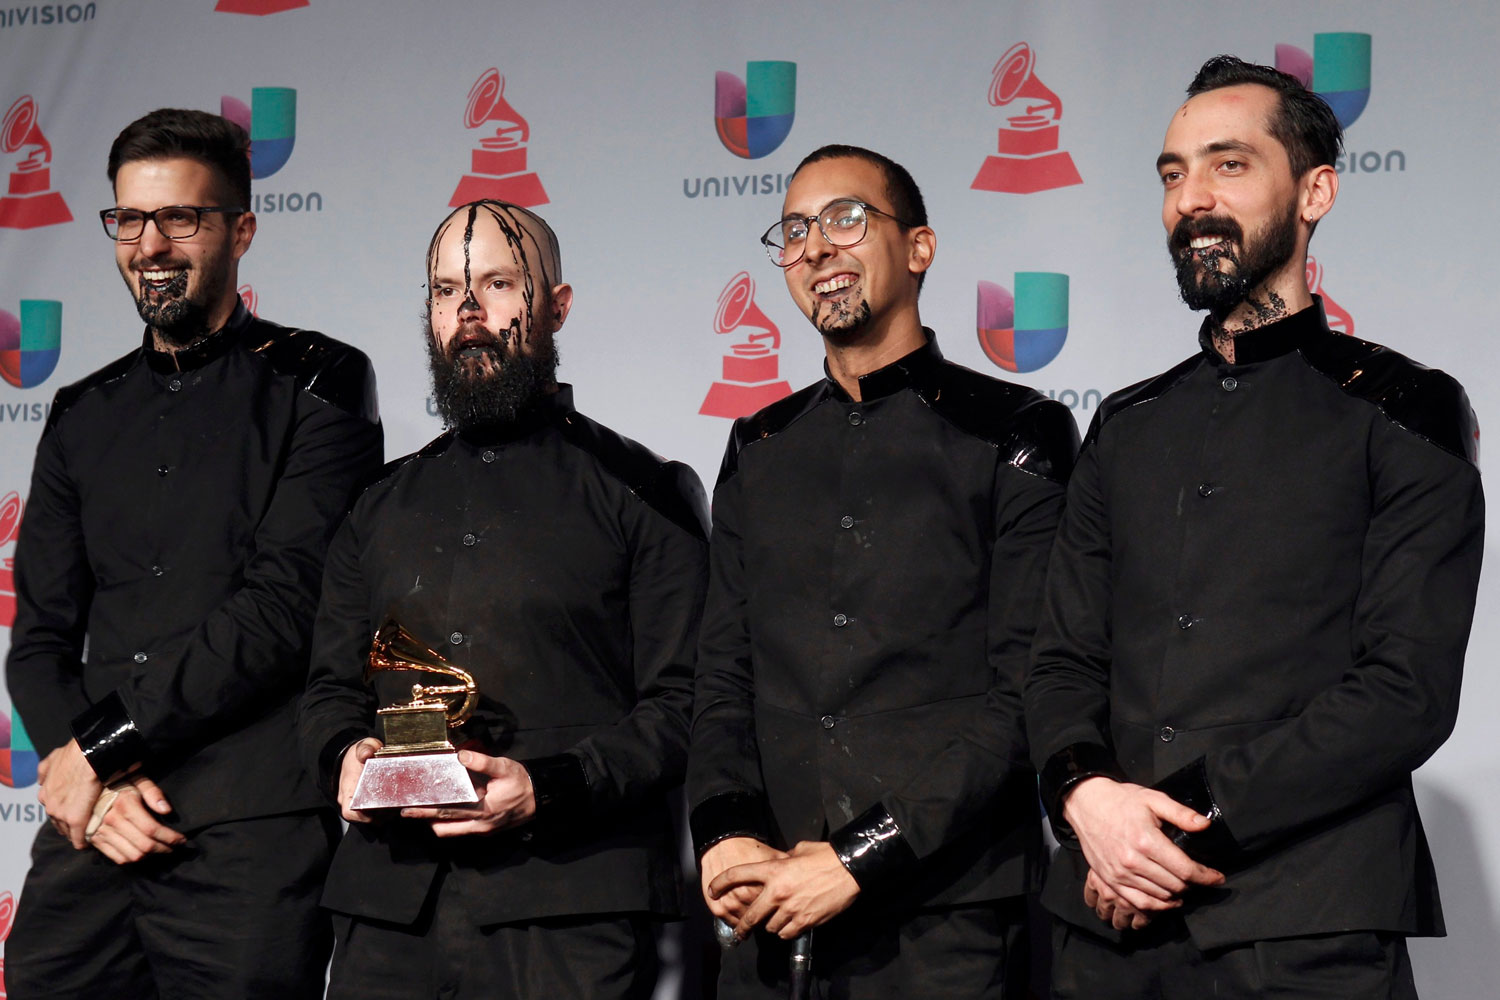 La vida Boheme premiado en la categoría de mejor álbum de rock.